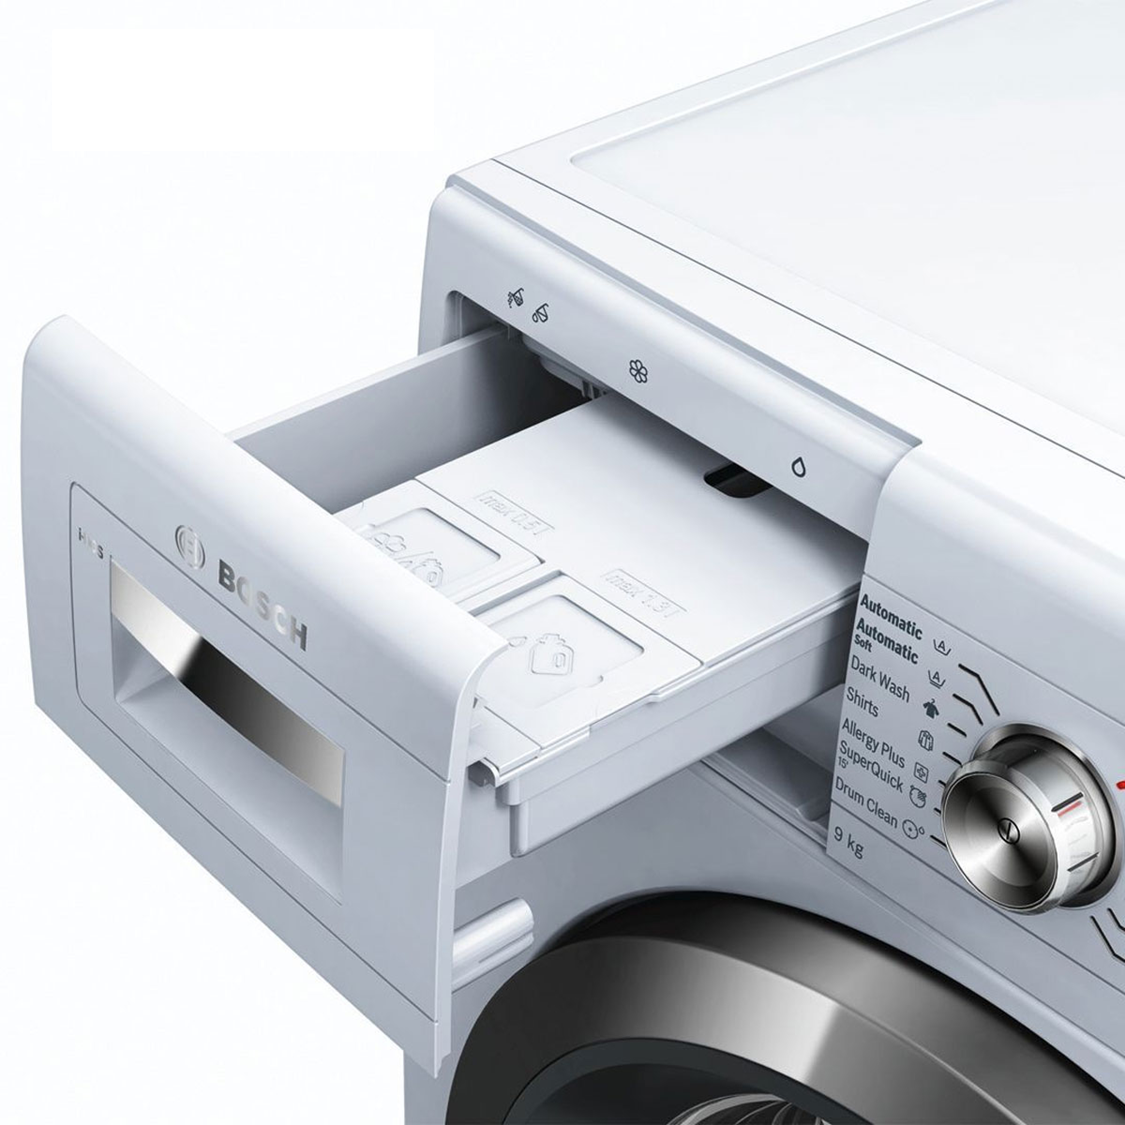  Hướng dẫn sử dụng khoang chứa bột giặt của máy giặt Bosh WAW32640EU